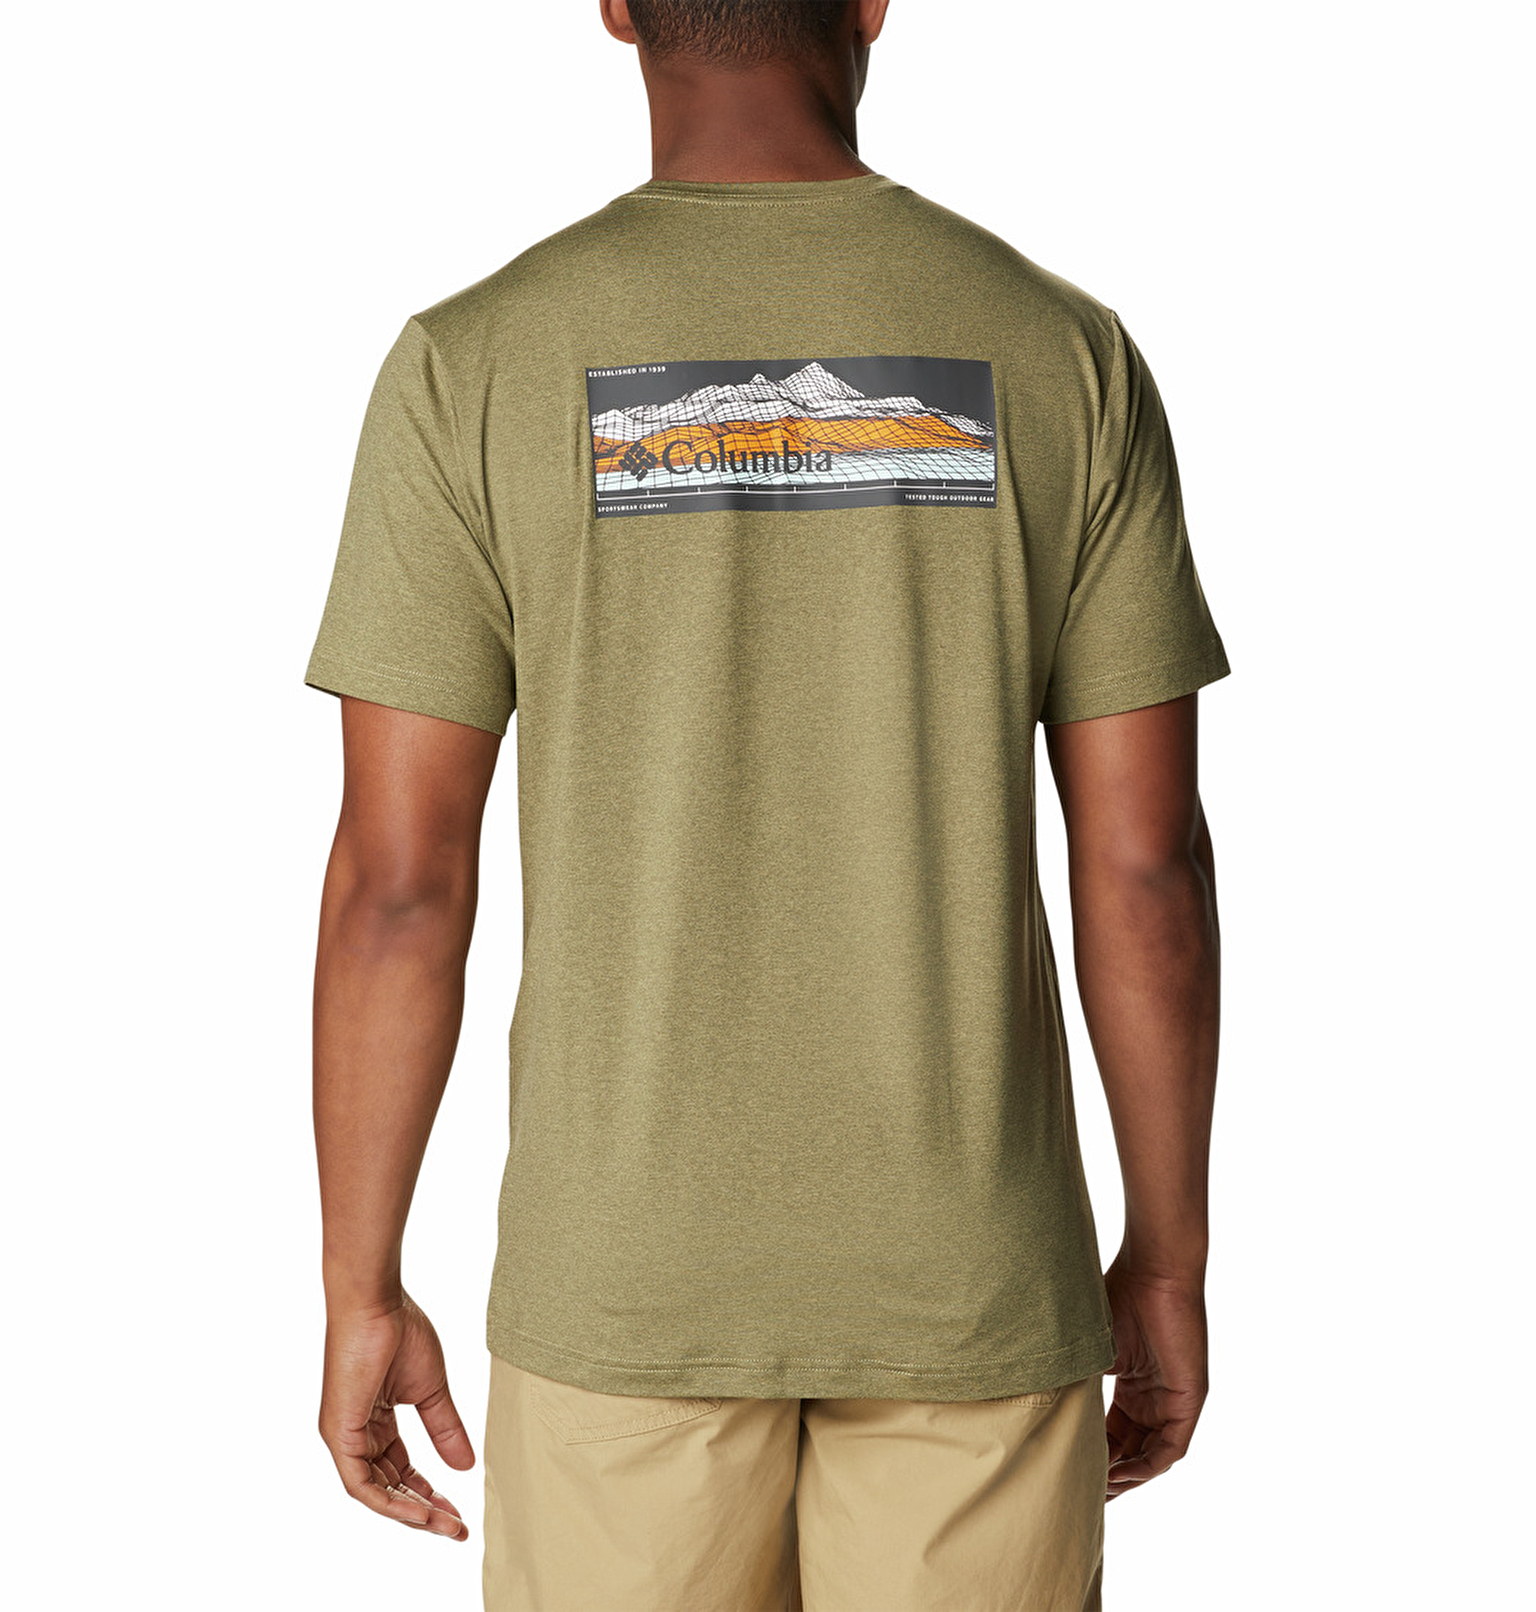 Tech Trail Graphic Erkek Kısa Kollu T-Shirt